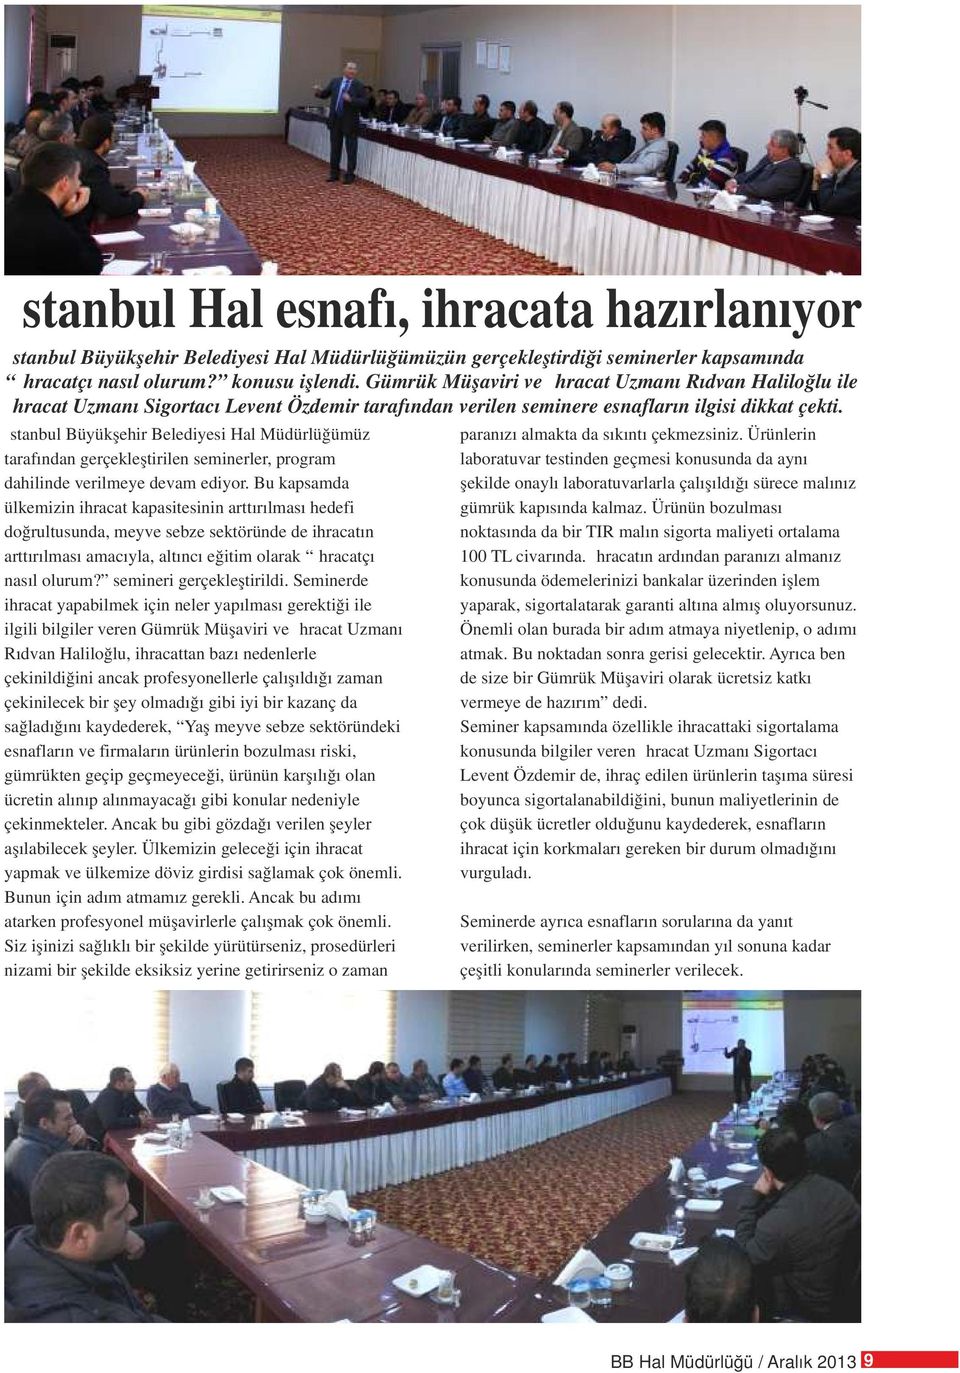 İstanbul Büyükşehir Belediyesi Hal Müdürlüğümüz tarafından gerçekleştirilen seminerler, program dahilinde verilmeye devam ediyor.